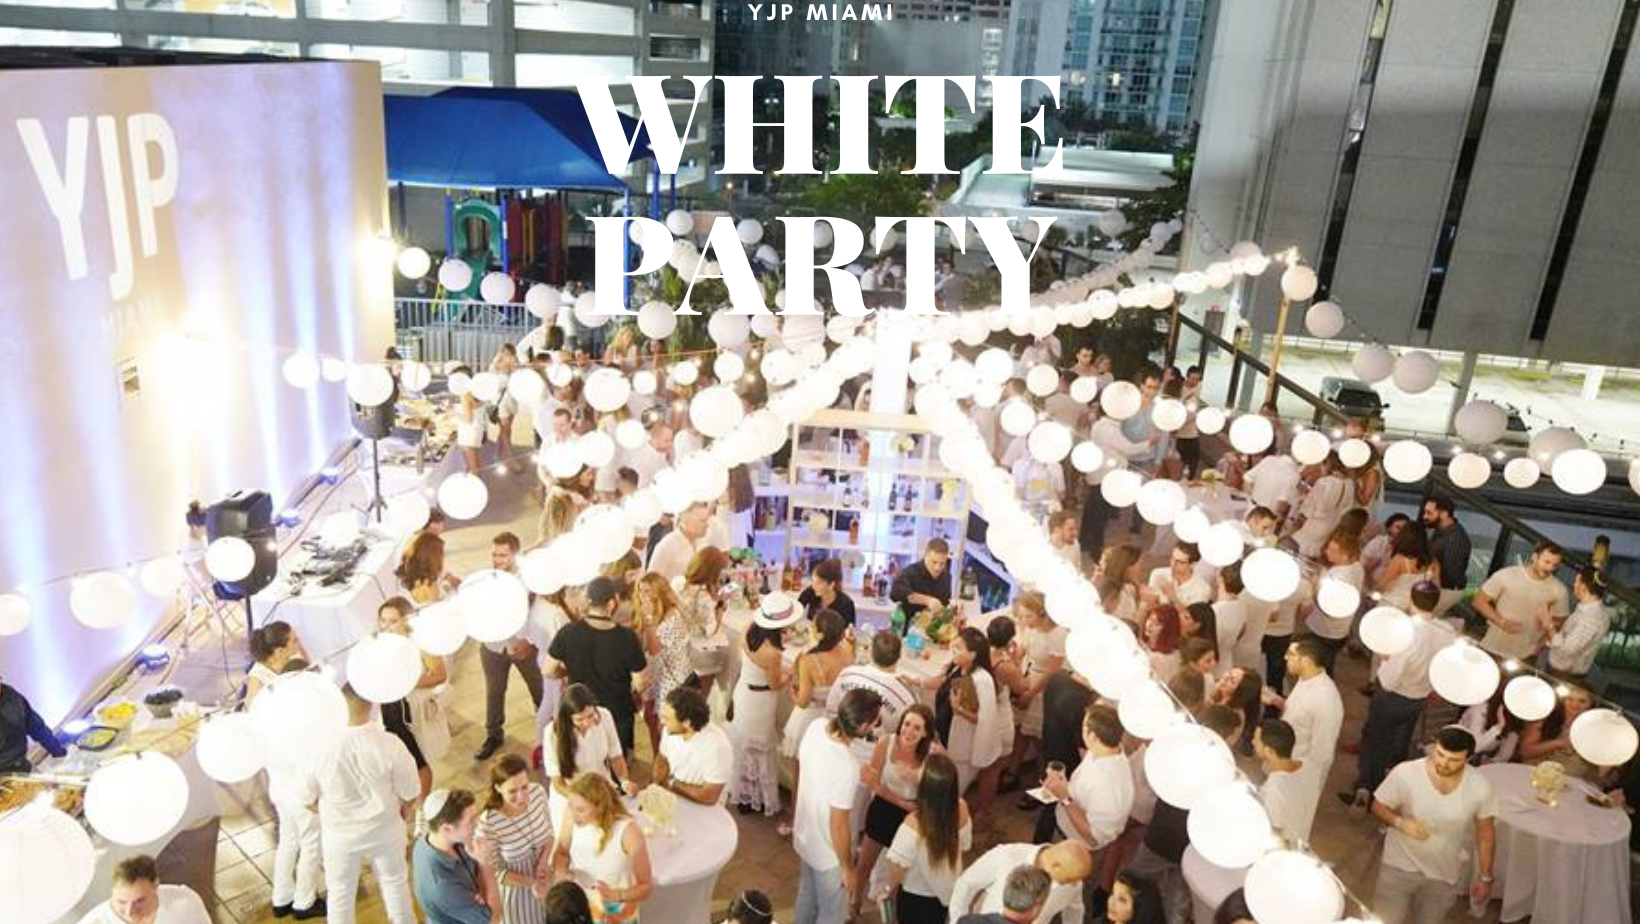 YJP Miami 12th Annual White Party